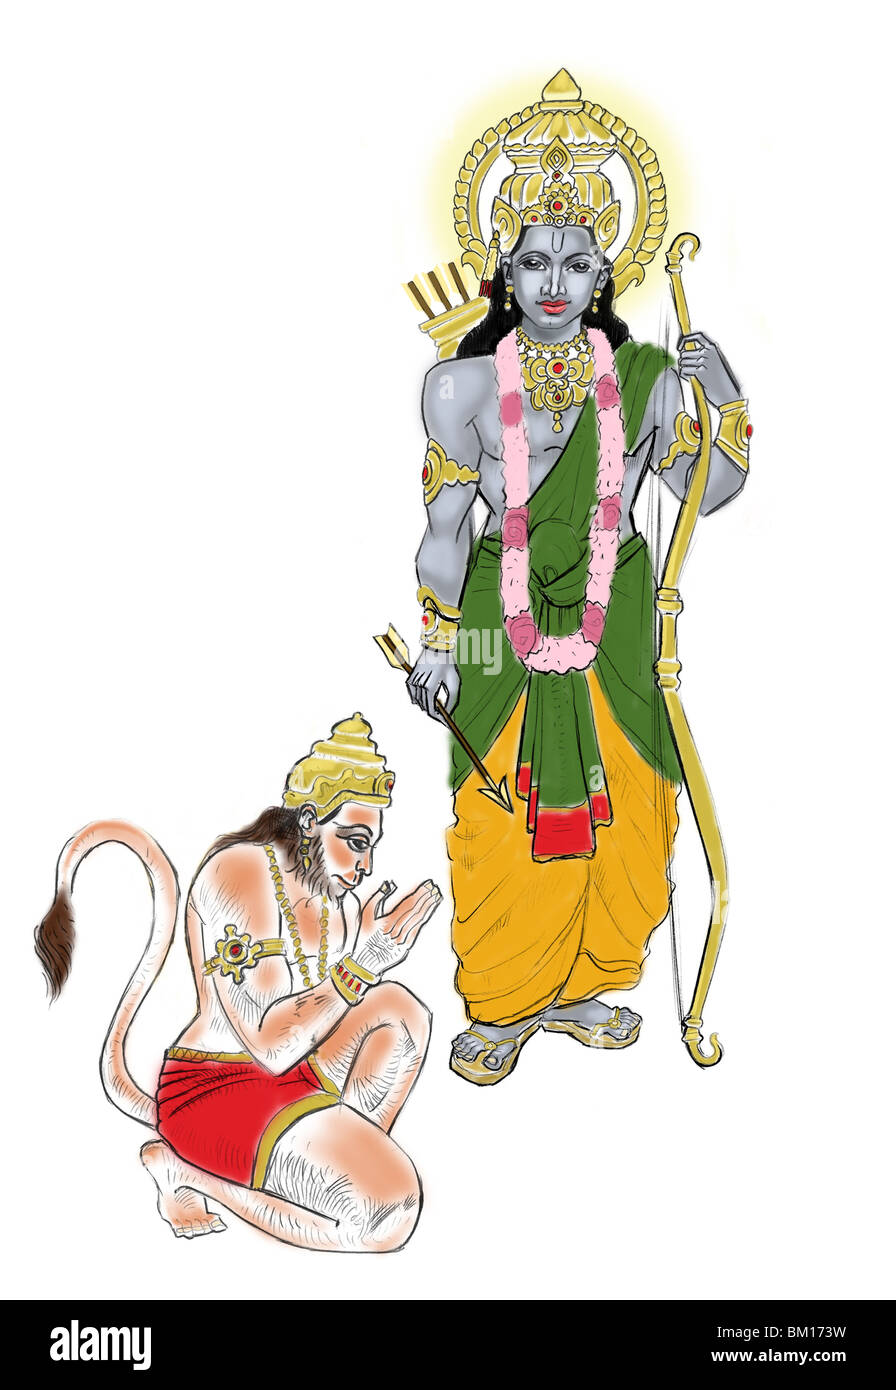 God hanuman Cut Out Stock Images & Pictures - Alamy